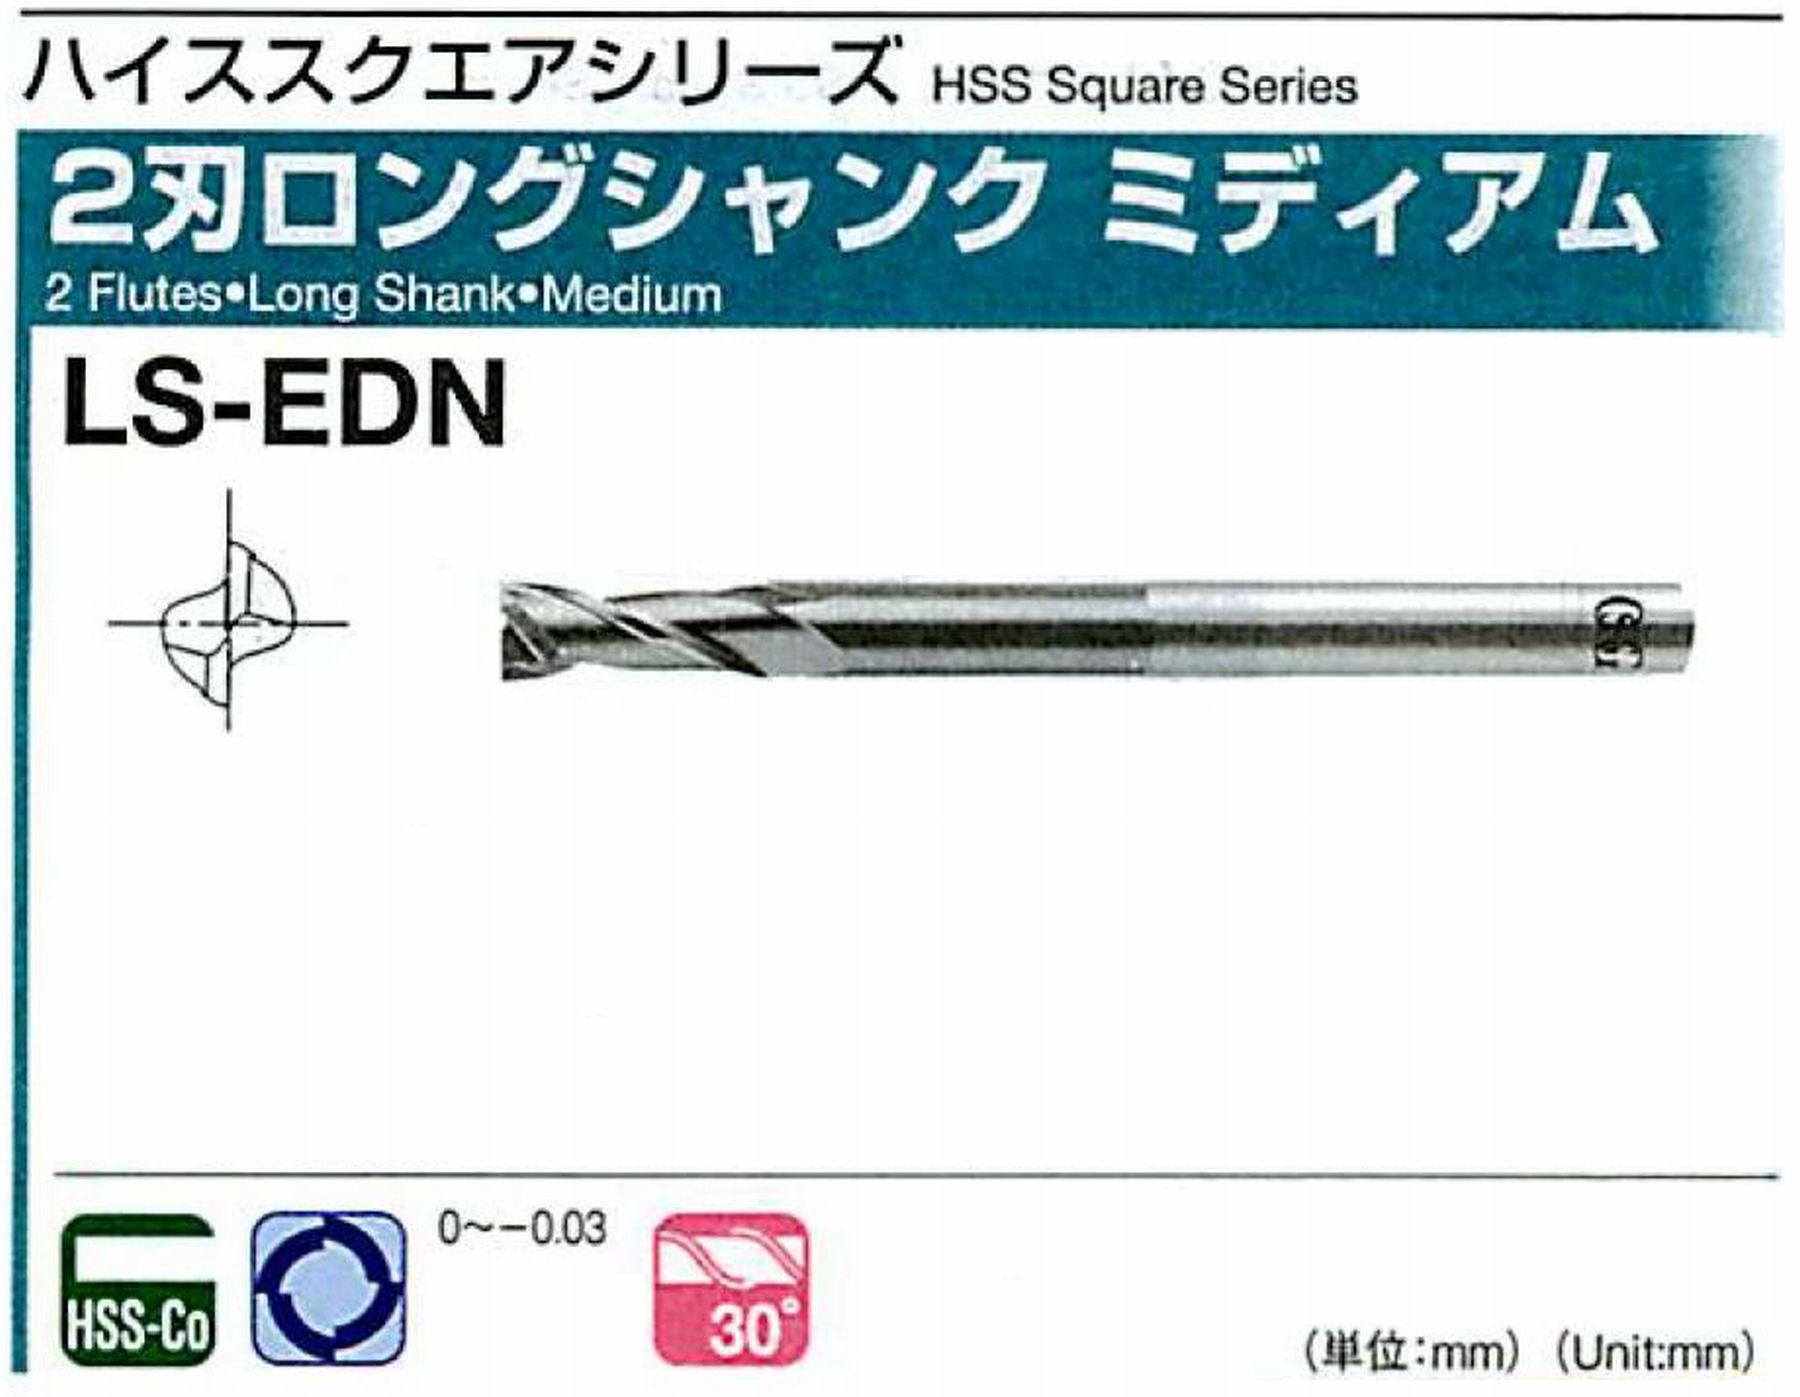 オーエスジー/OSG 2刃ロングシャンク ミディアム LS-EDN 外径20 全長185 刃長45 シャンク径20mm